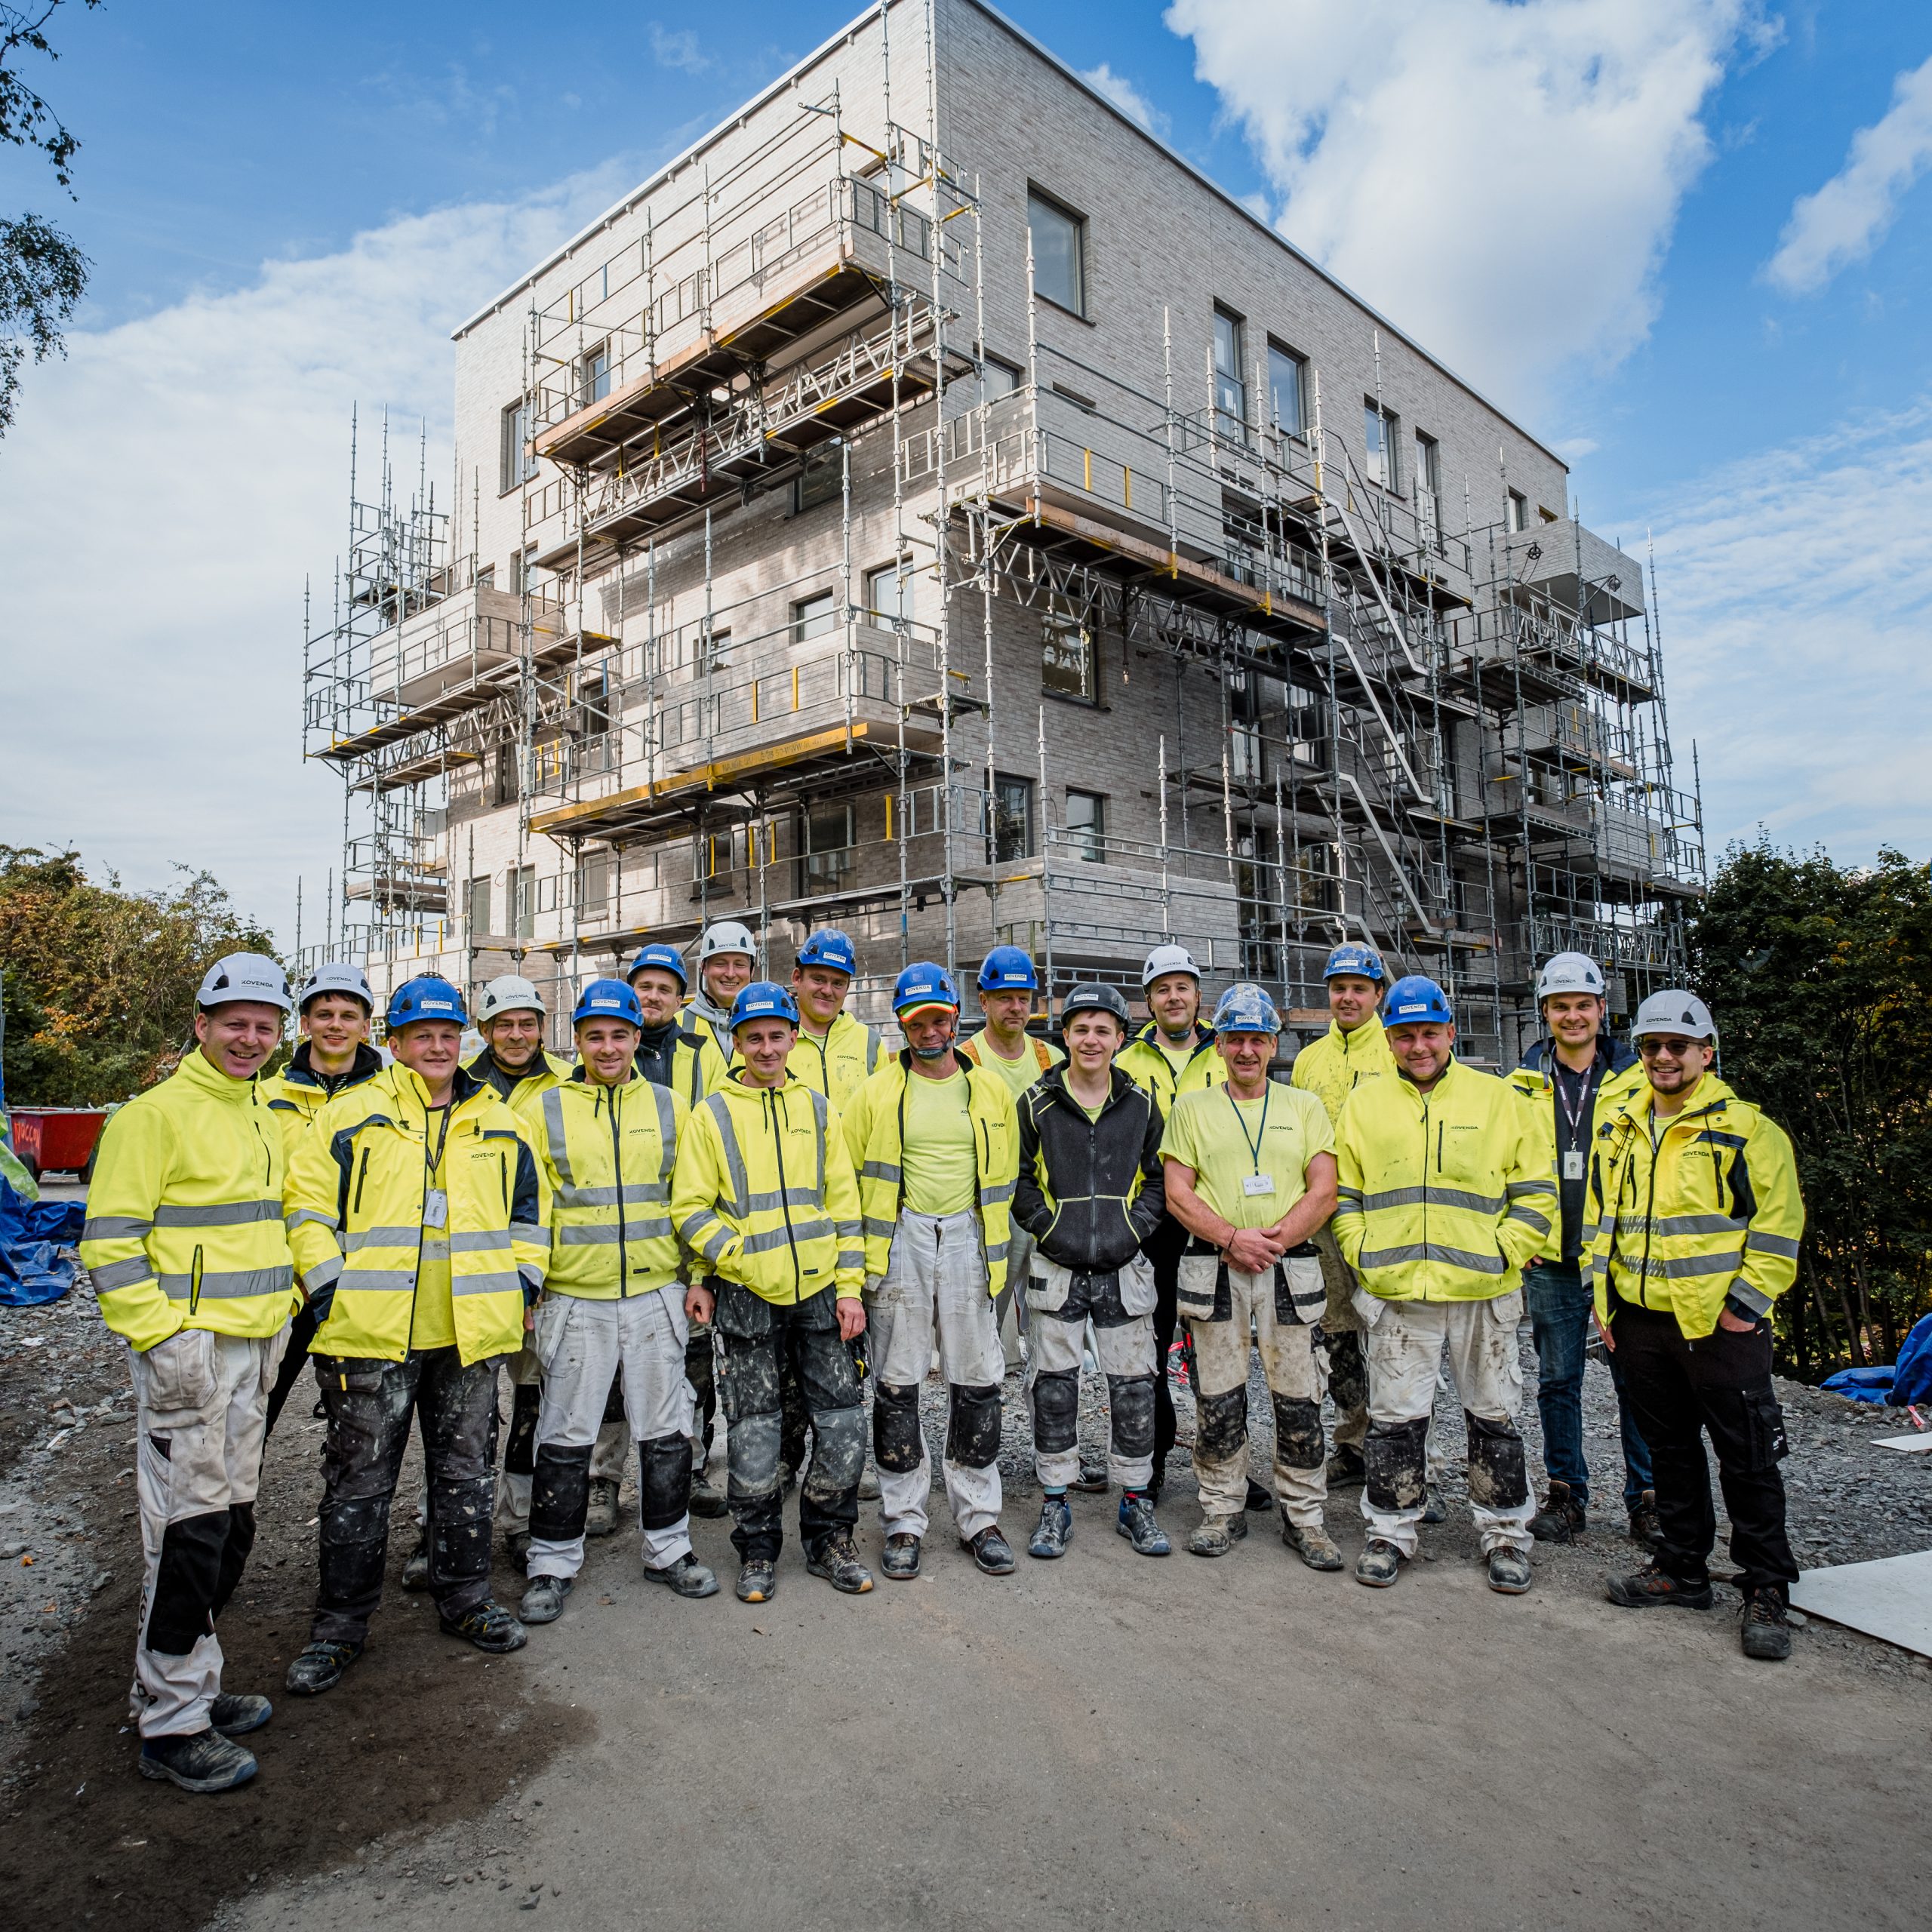 Arbetare renoverar en tegelfasad på en historisk byggnad i Stockholm